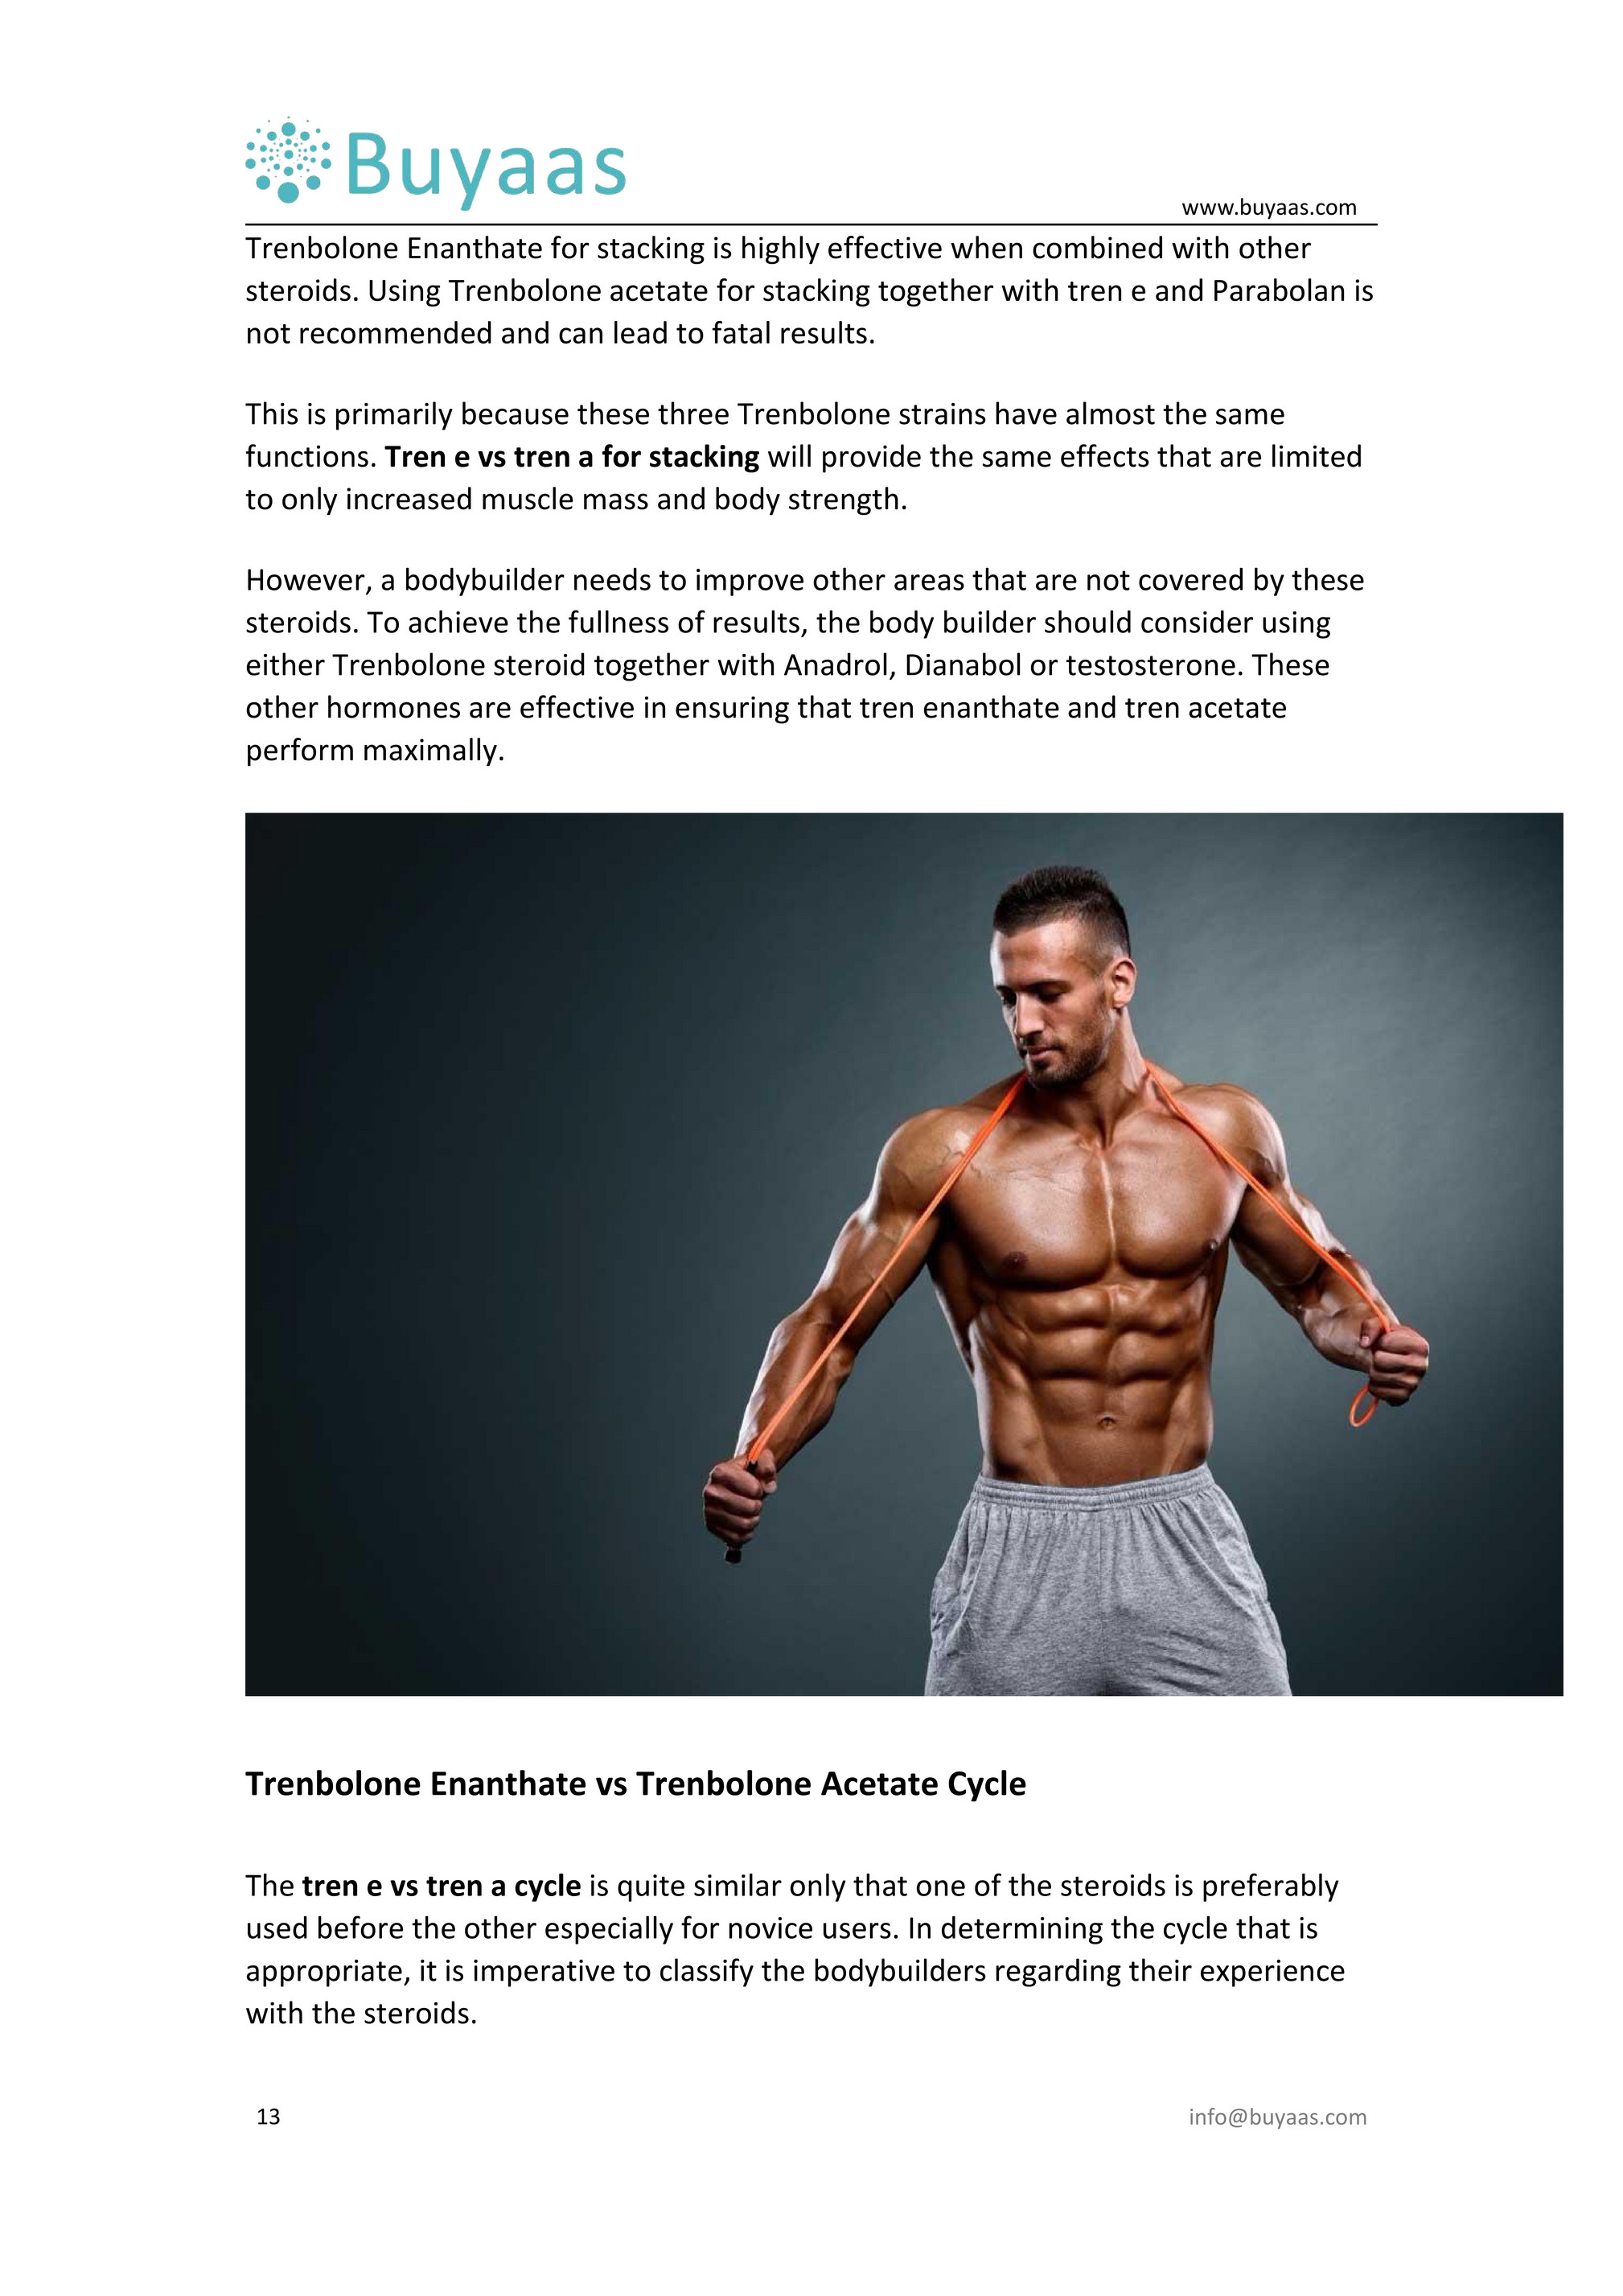 5 semplici modi per trasformare la siti per steroidi in successo